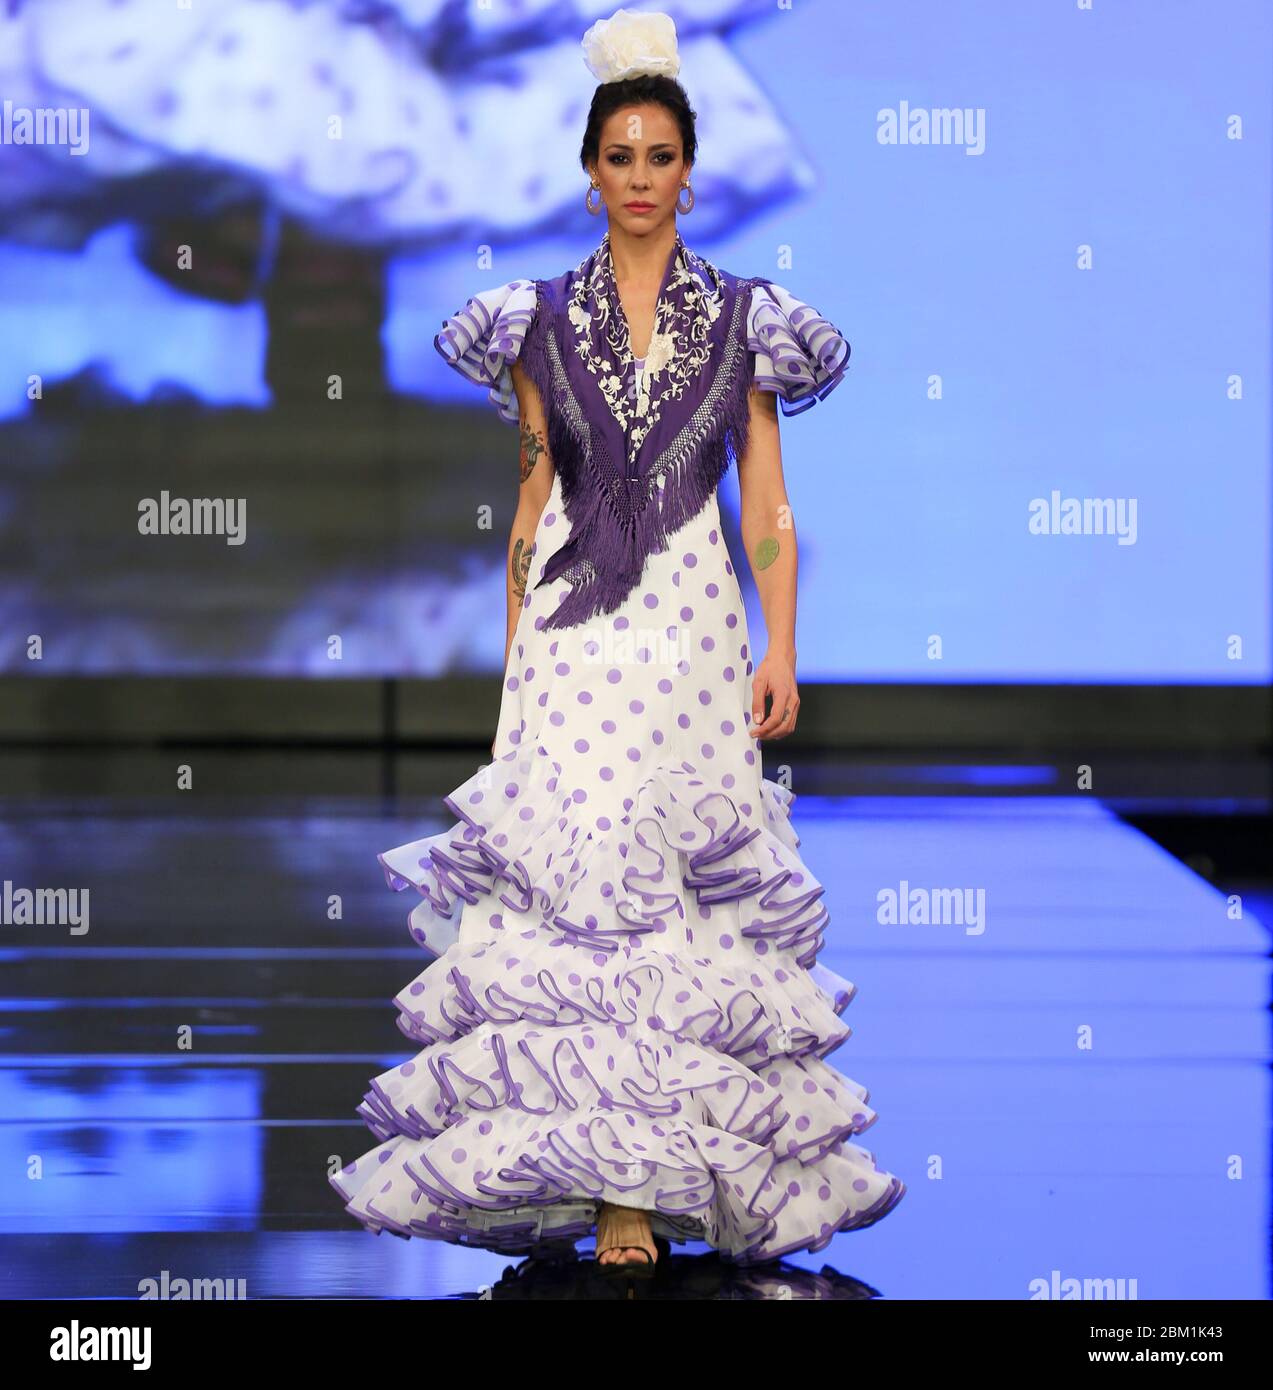 Salon internacional de moda flamenca e imágenes de alta resolución Alamy